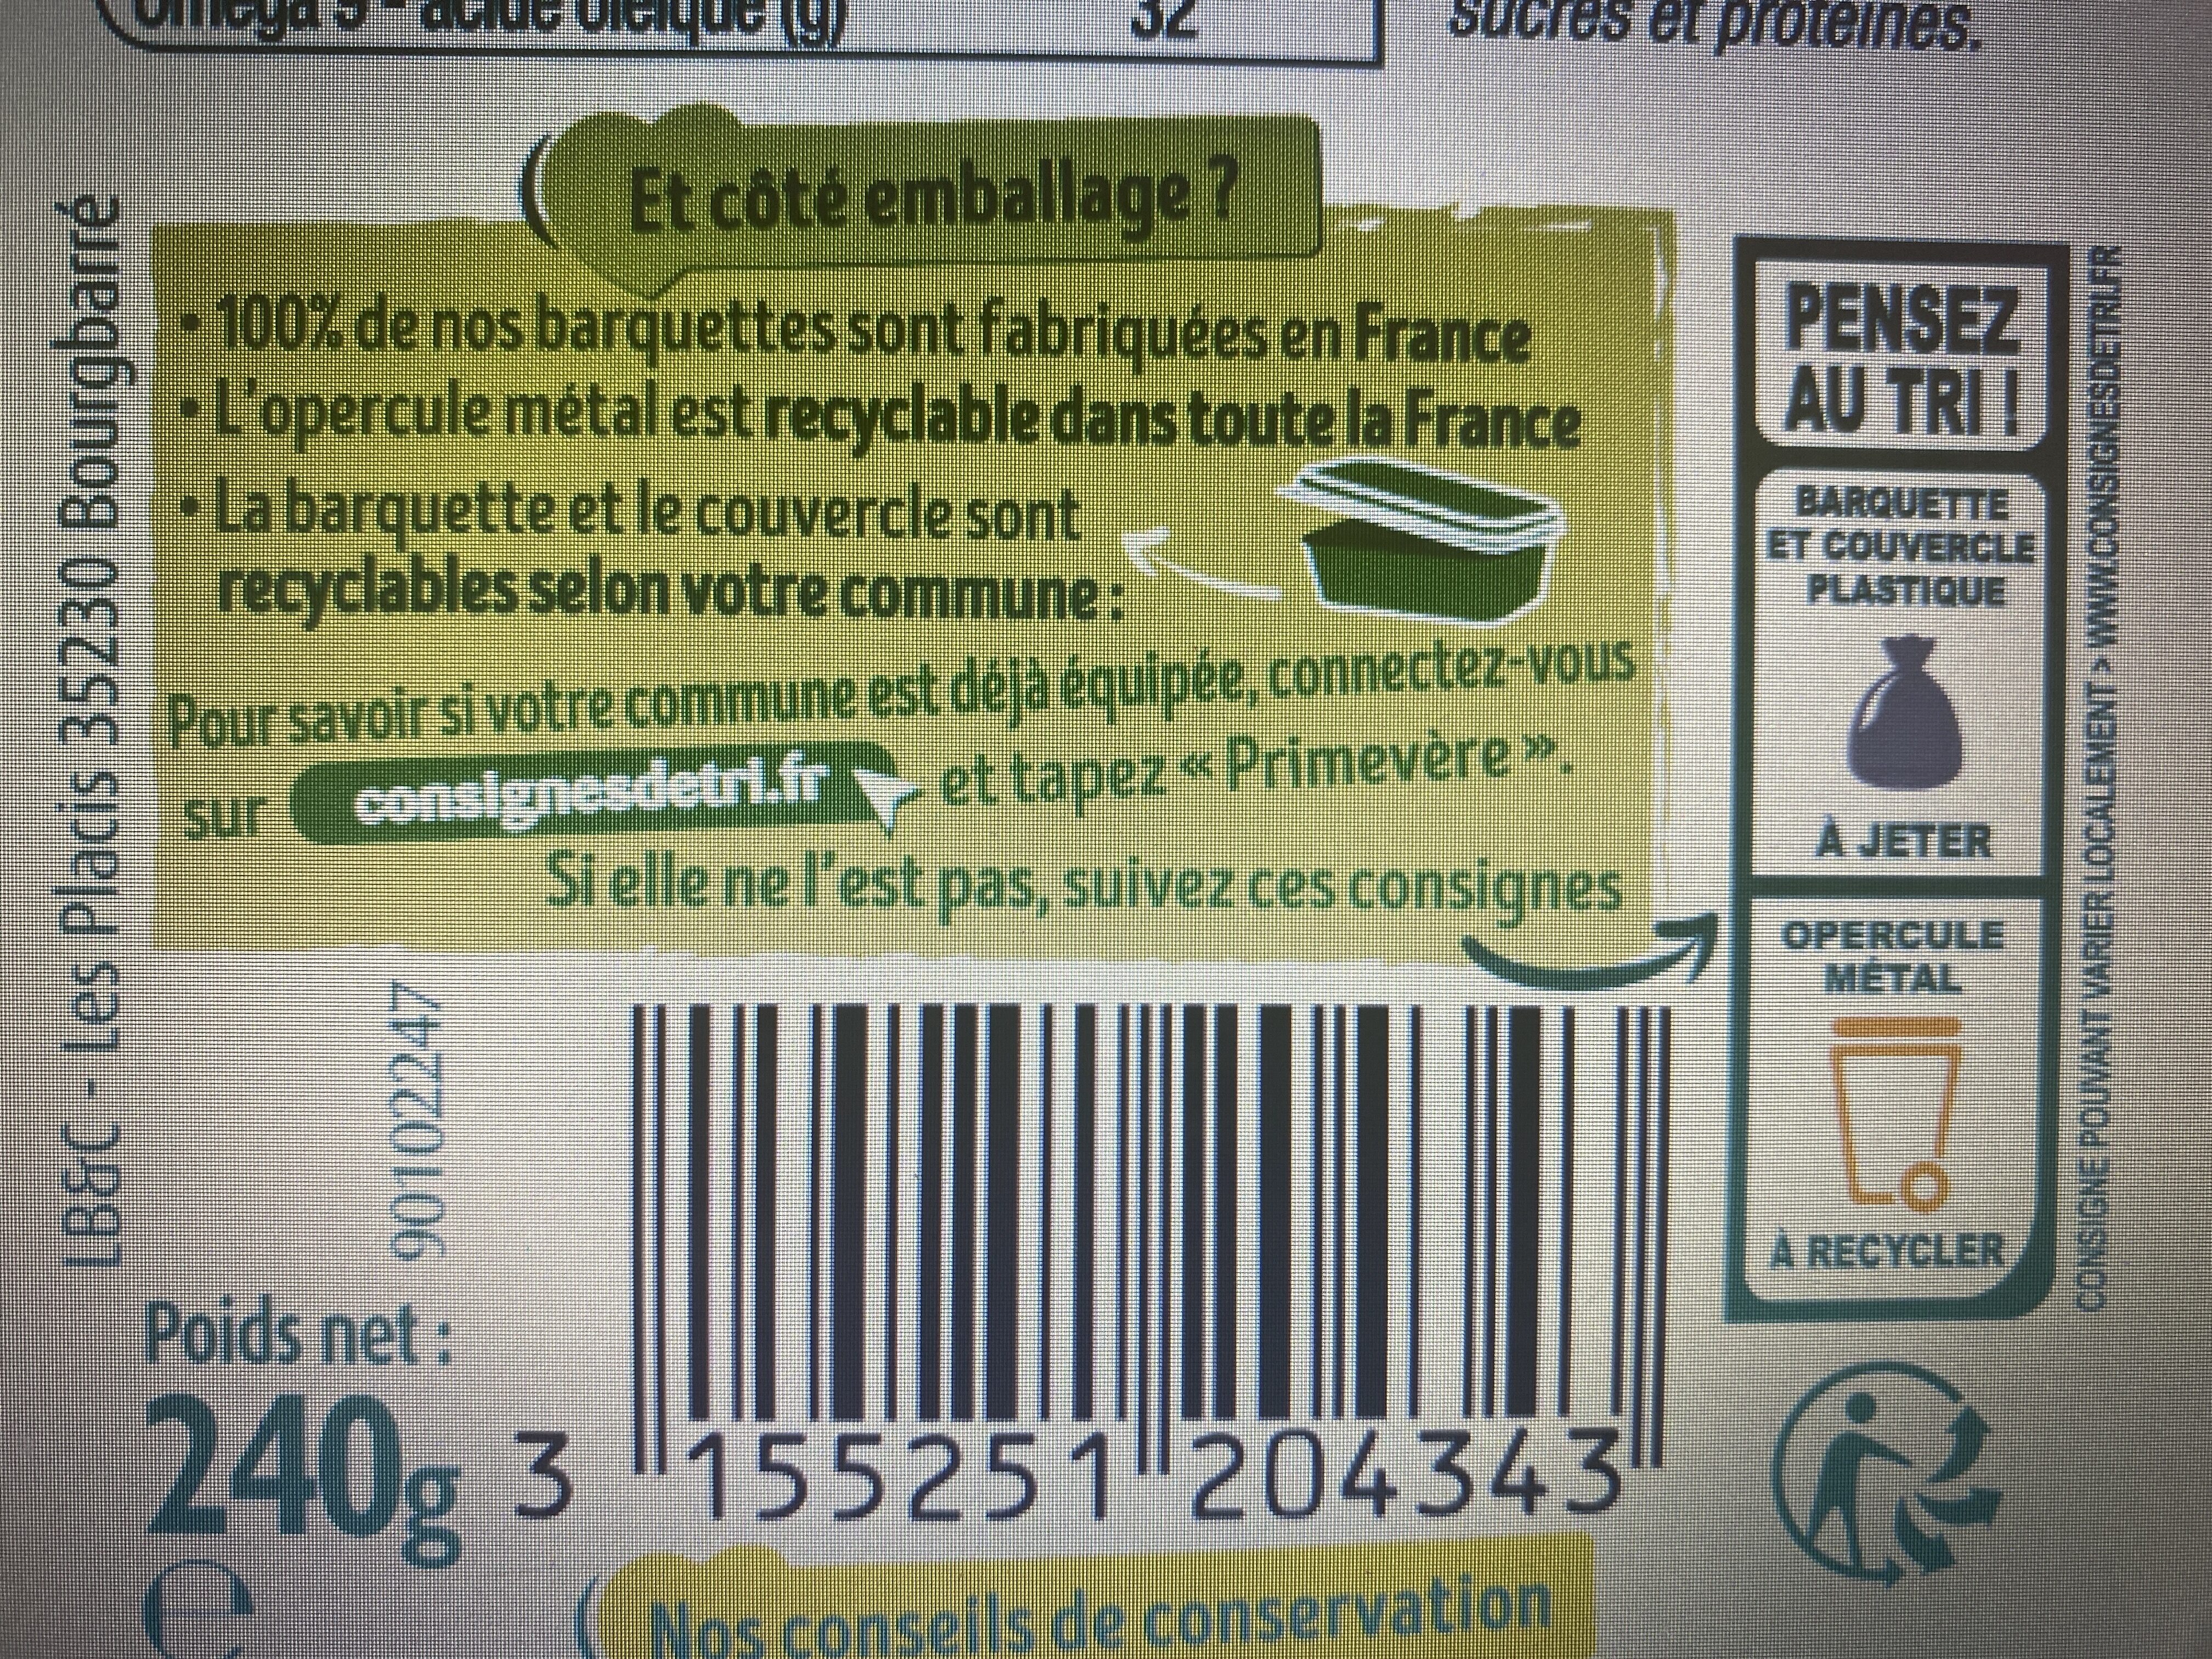 Tartine doux végétal - Istruzioni per il riciclaggio e/o informazioni sull'imballaggio - fr